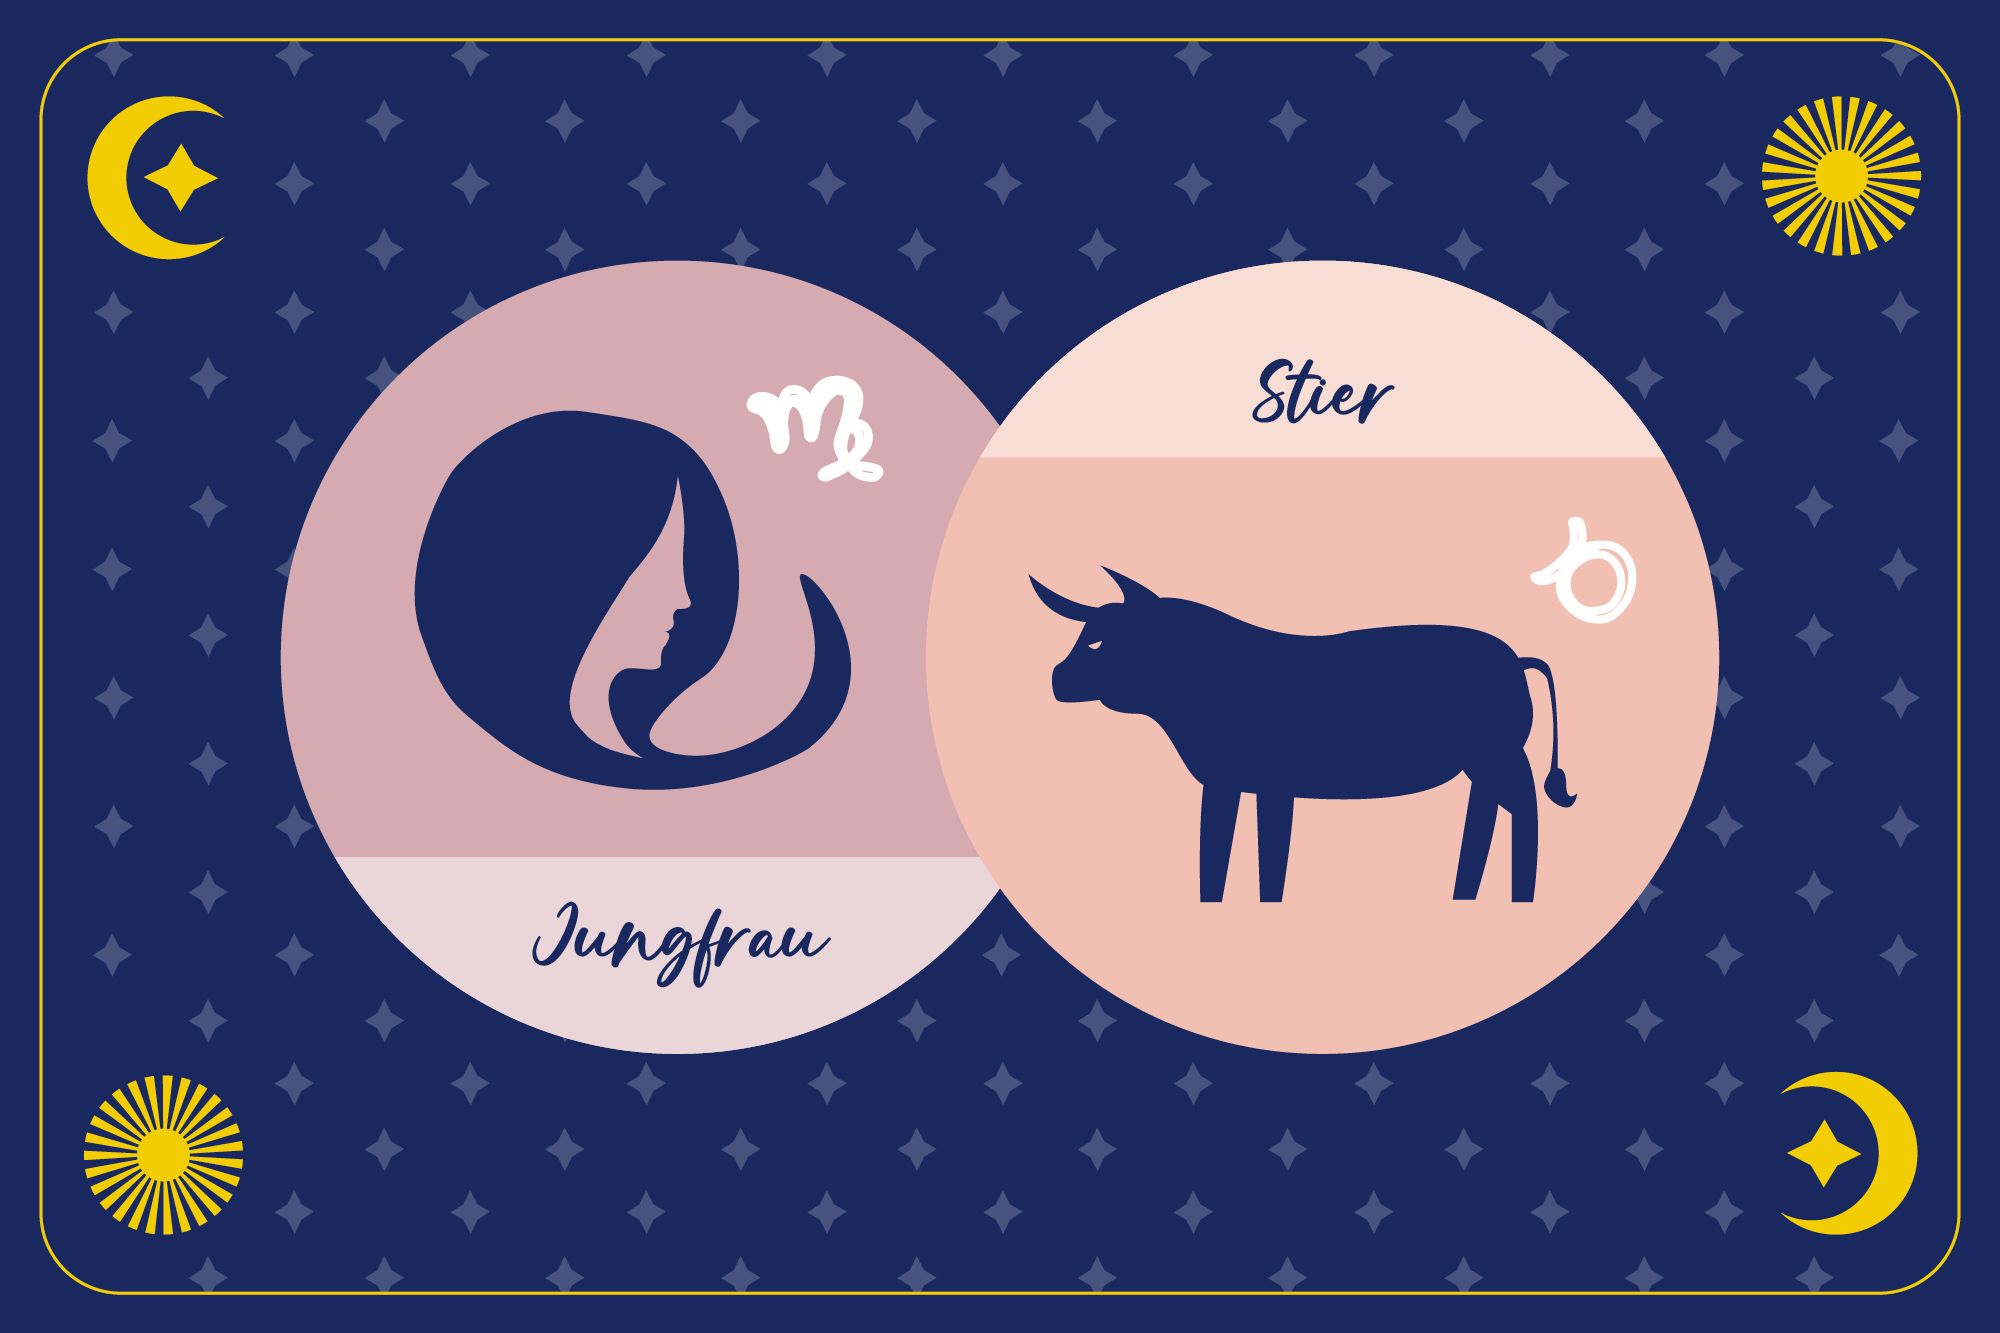 Sternzeichen Stier in pfirsichfarbenem Kreis und Sternzeichen Jungfrau in beigem Kreis auf dunkelblauem Hintergrund mit Mond, Sonne und Sternen